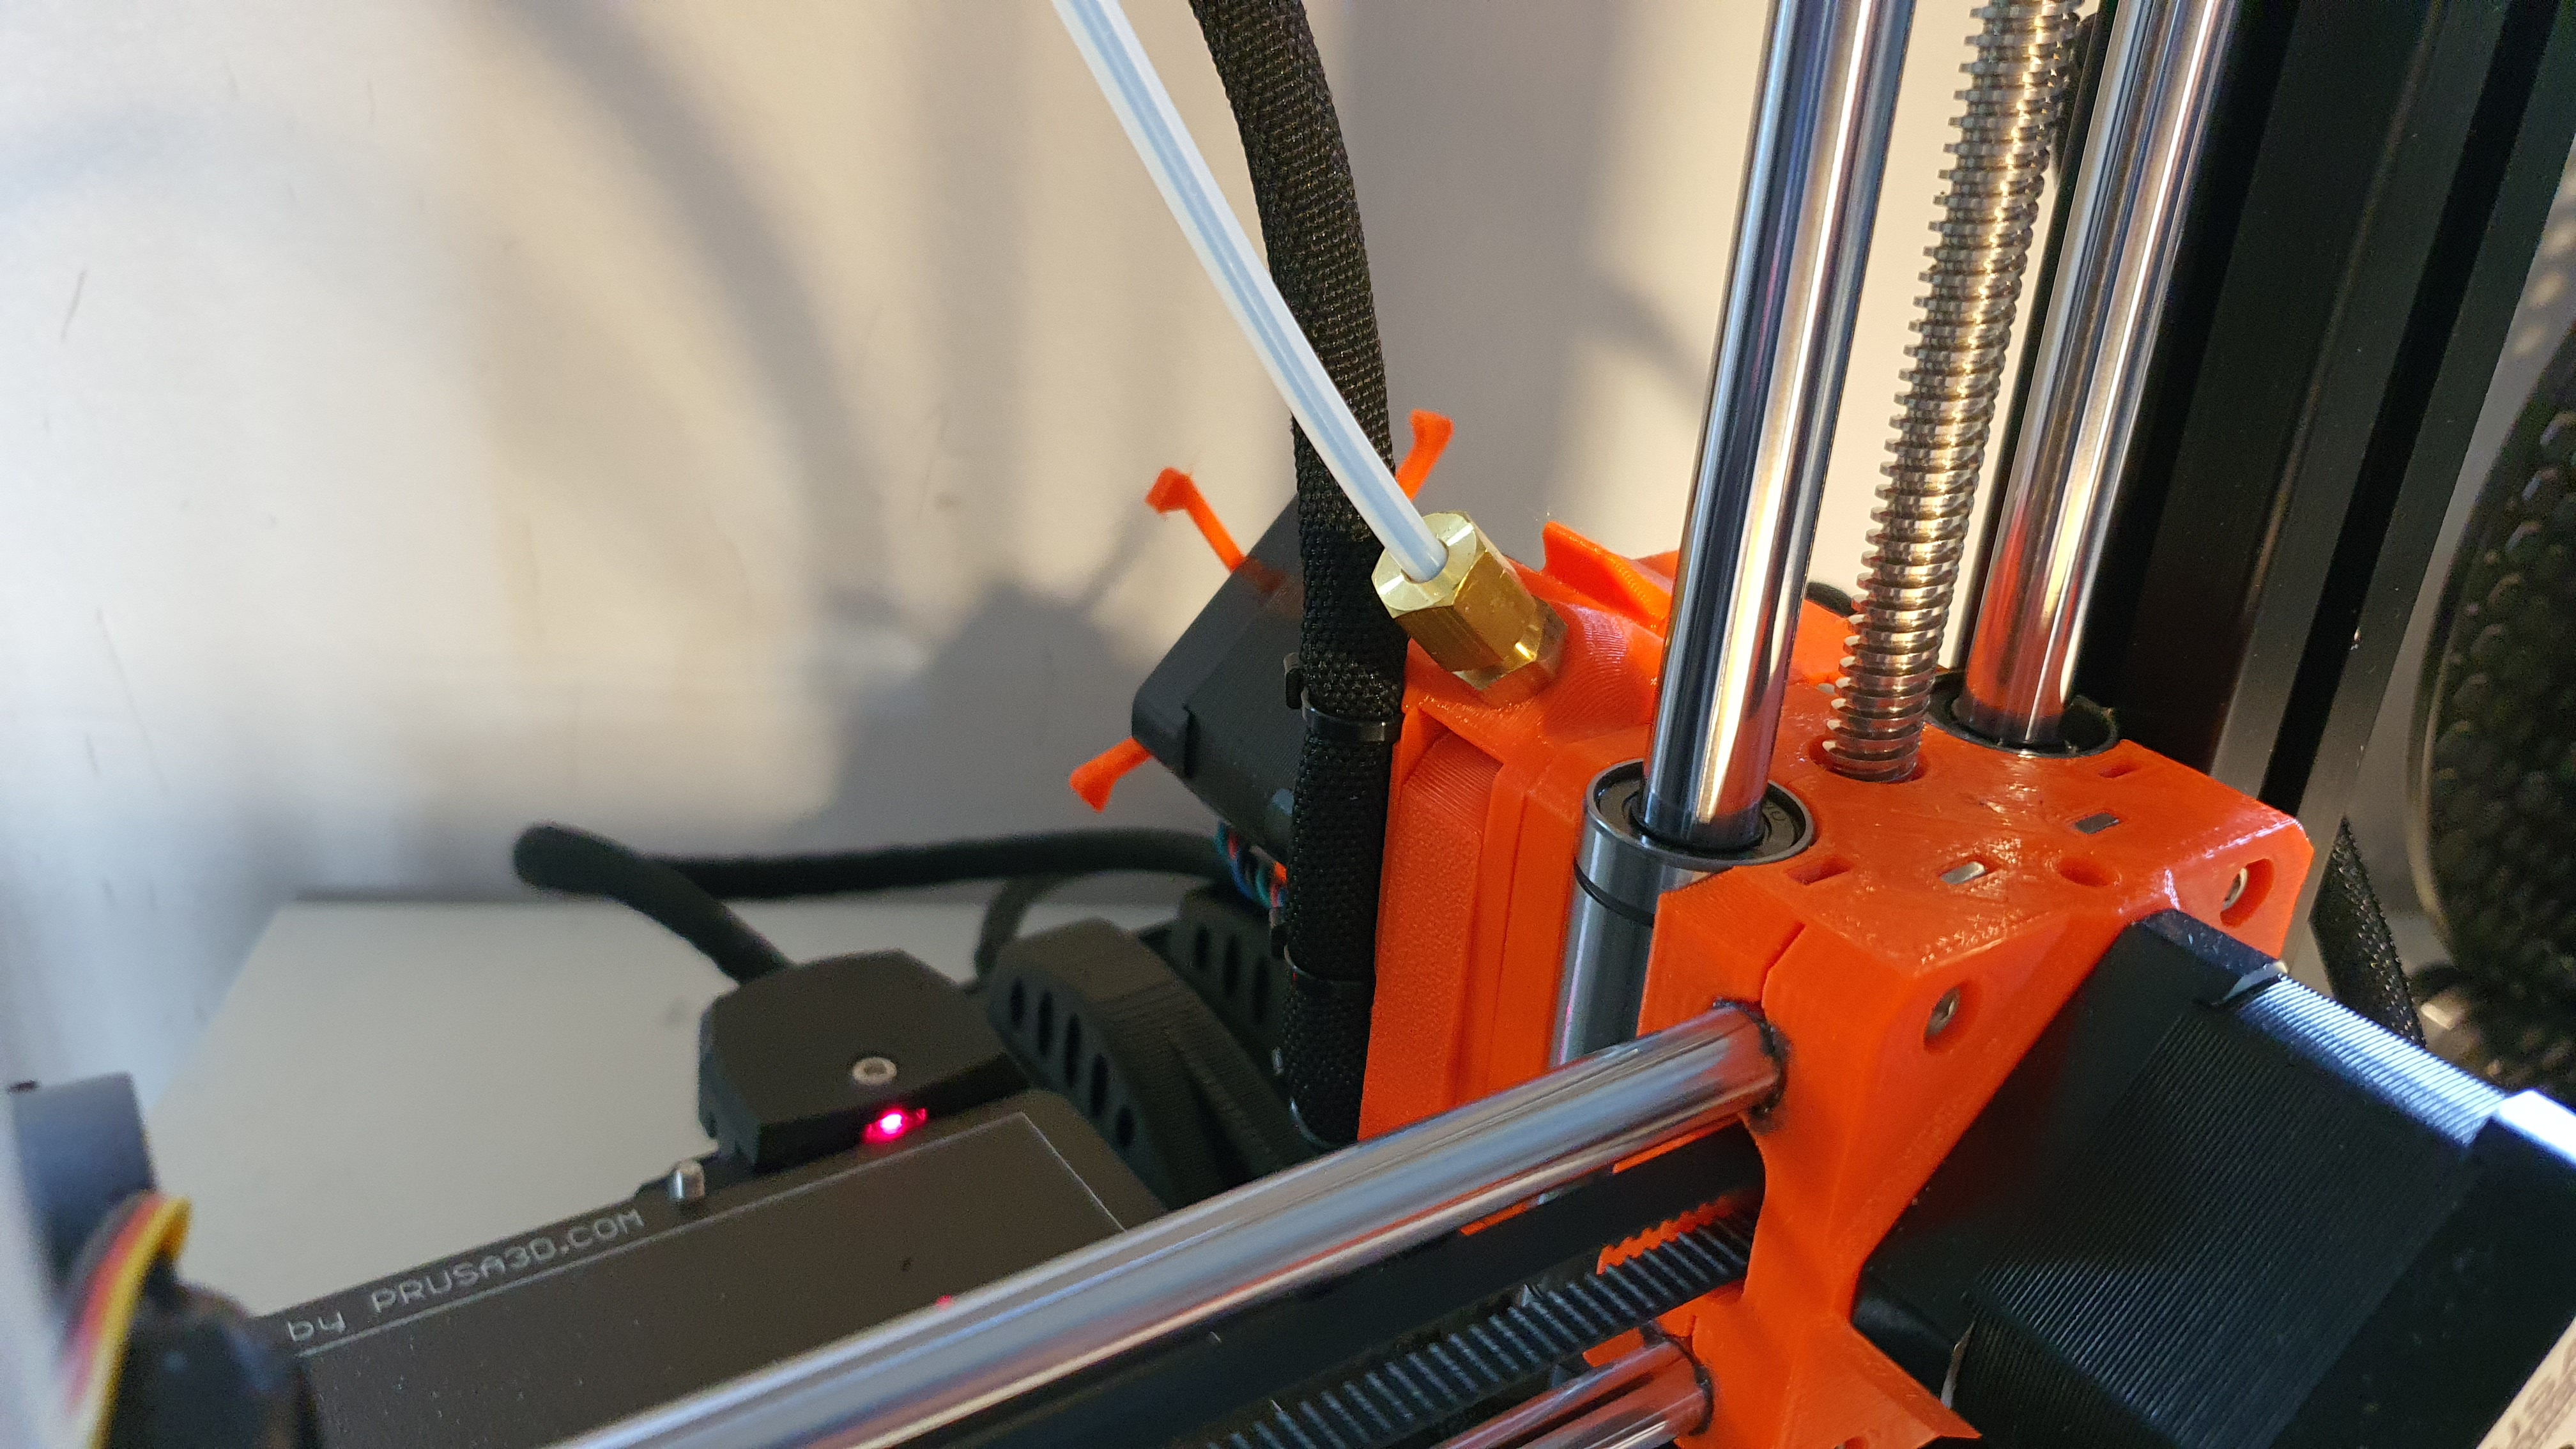 Another Prusa Mini filament indicator